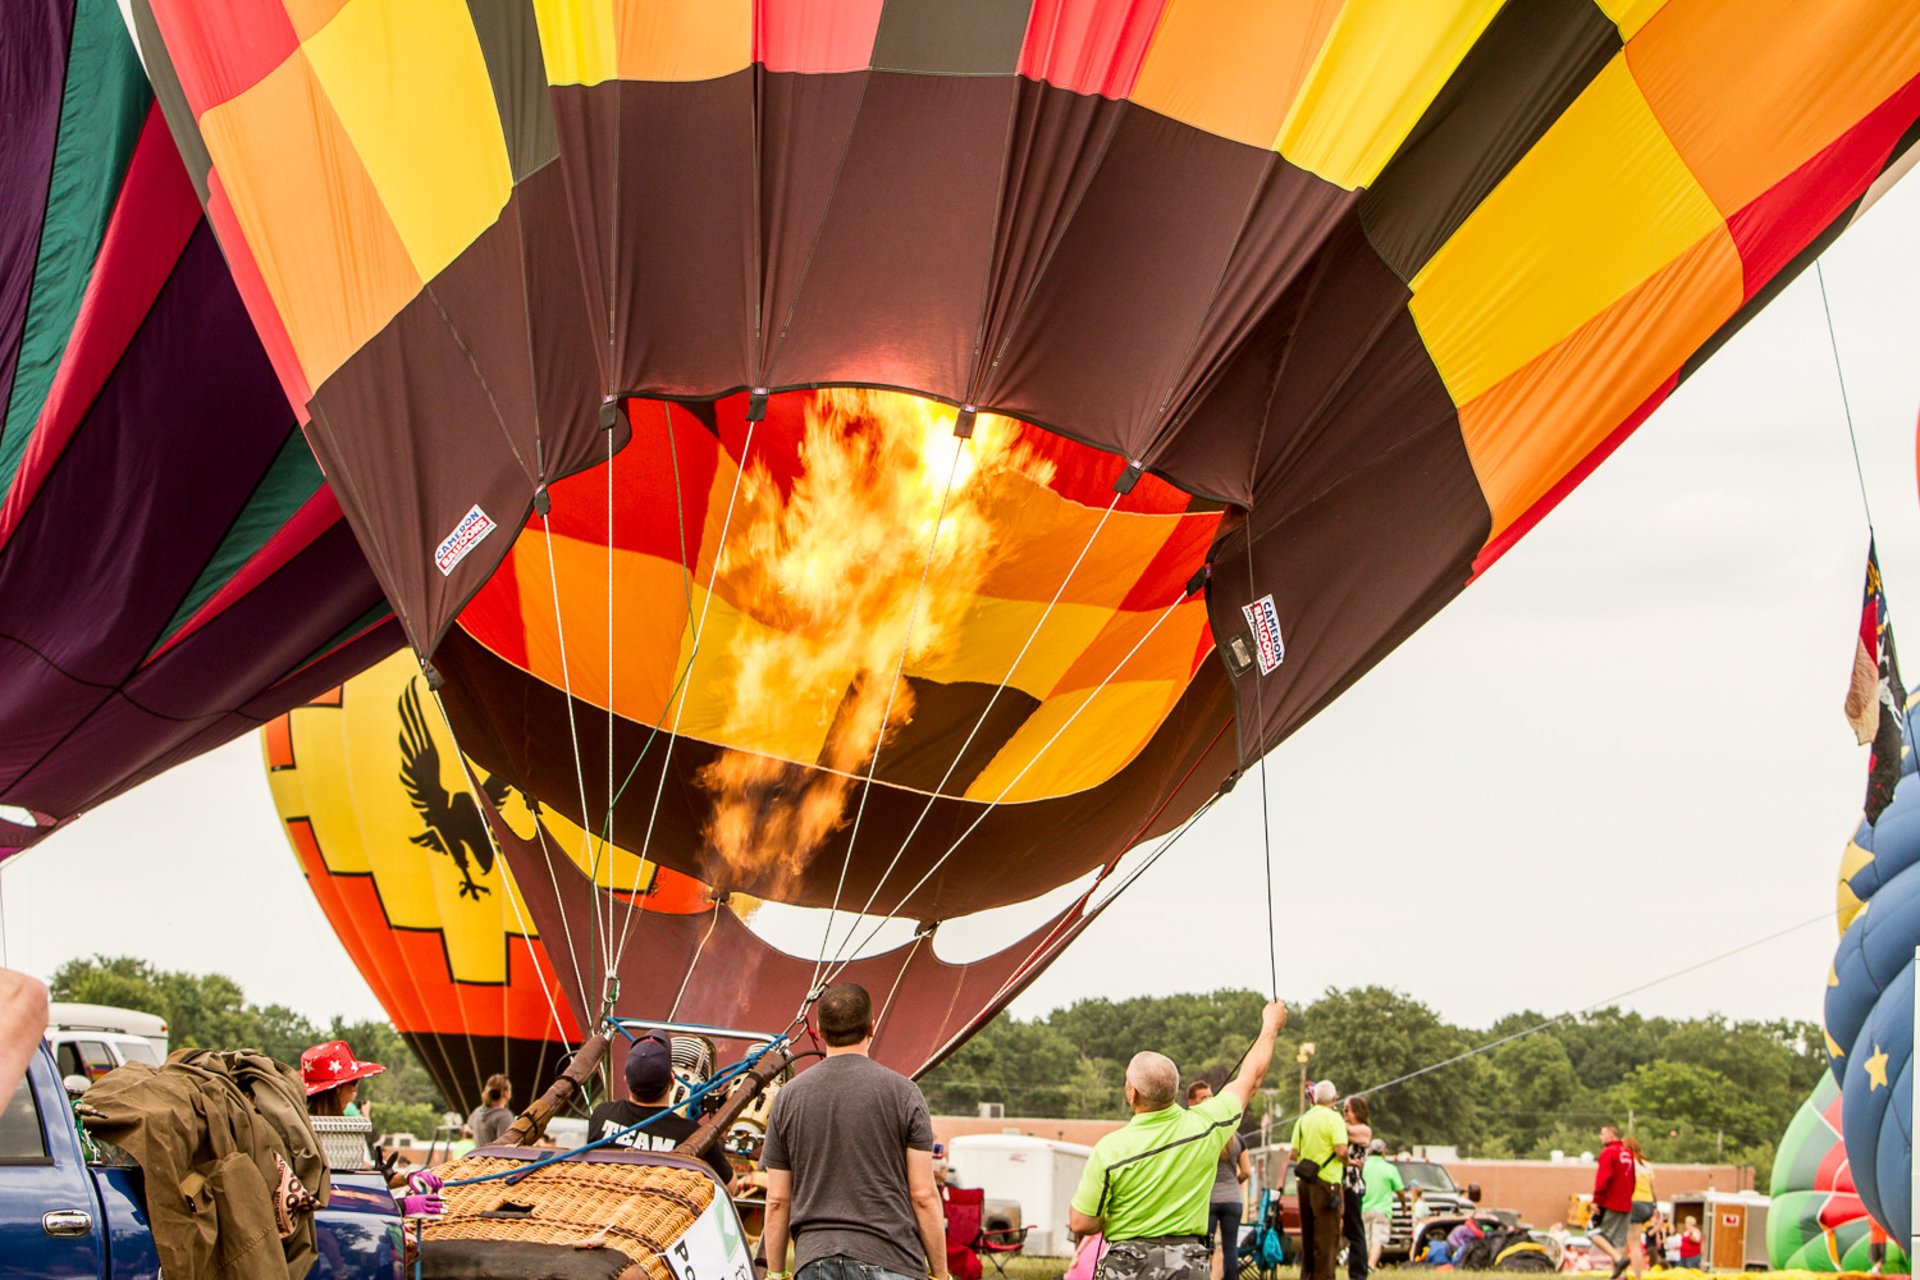 Ashland Balloon Fest 2023 in Ohio Dates